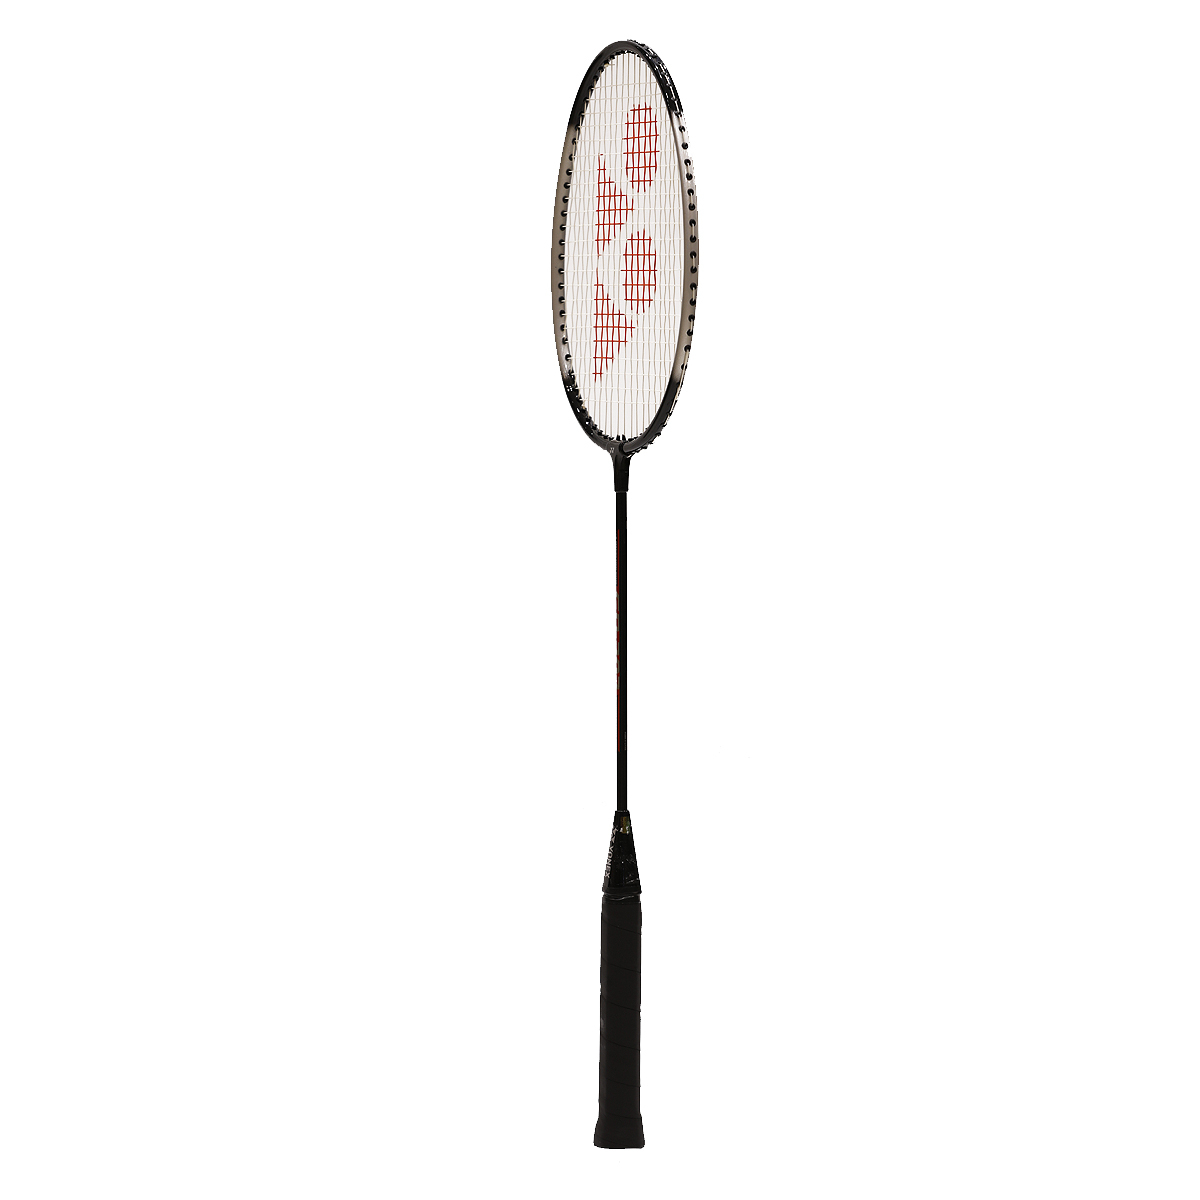 Yonex Badminton Racket GR303